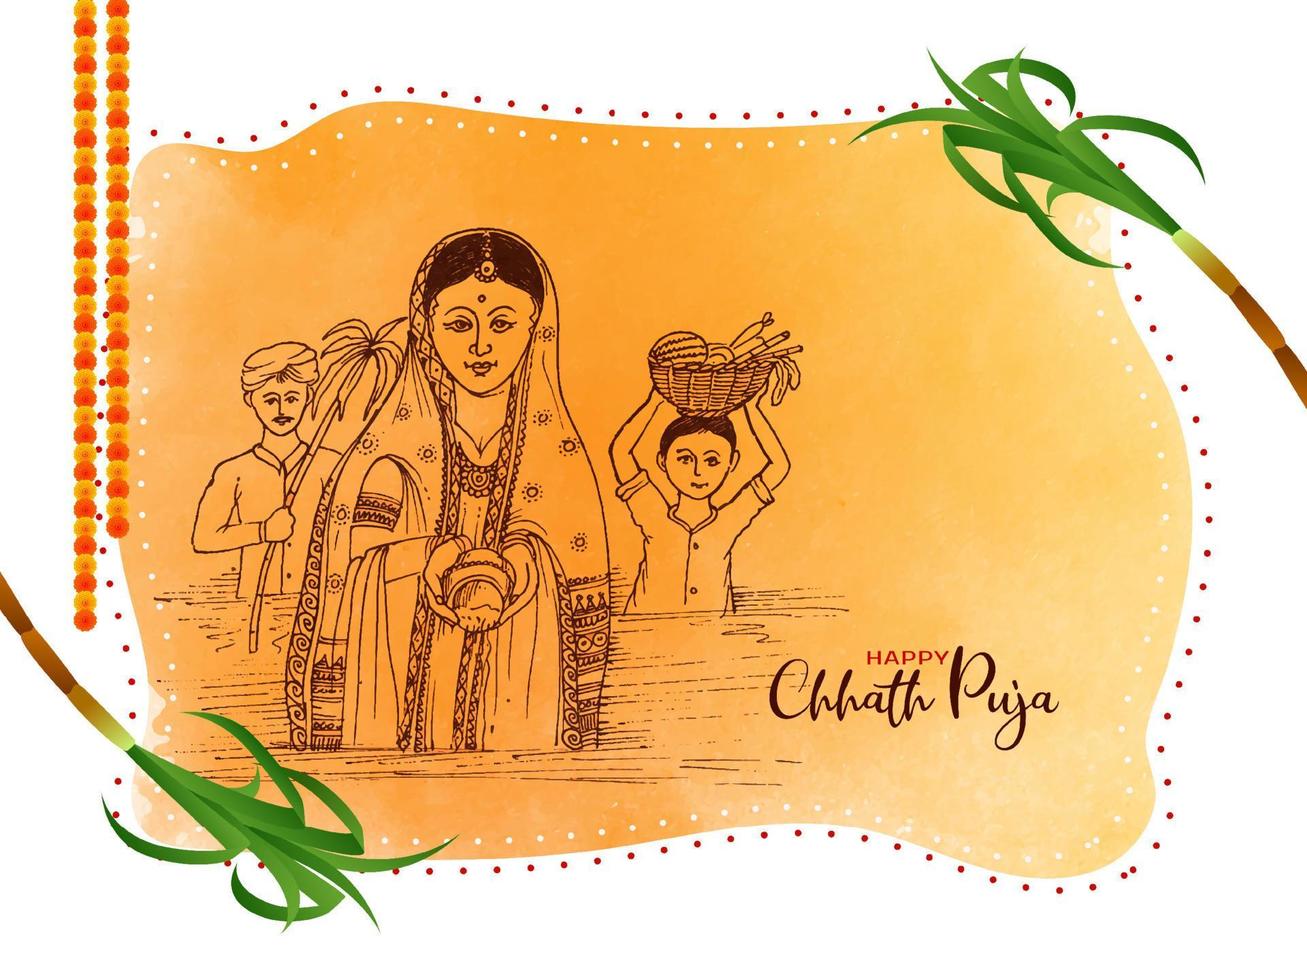 fundo de celebração do festival indiano cultural de chhath puja feliz vetor